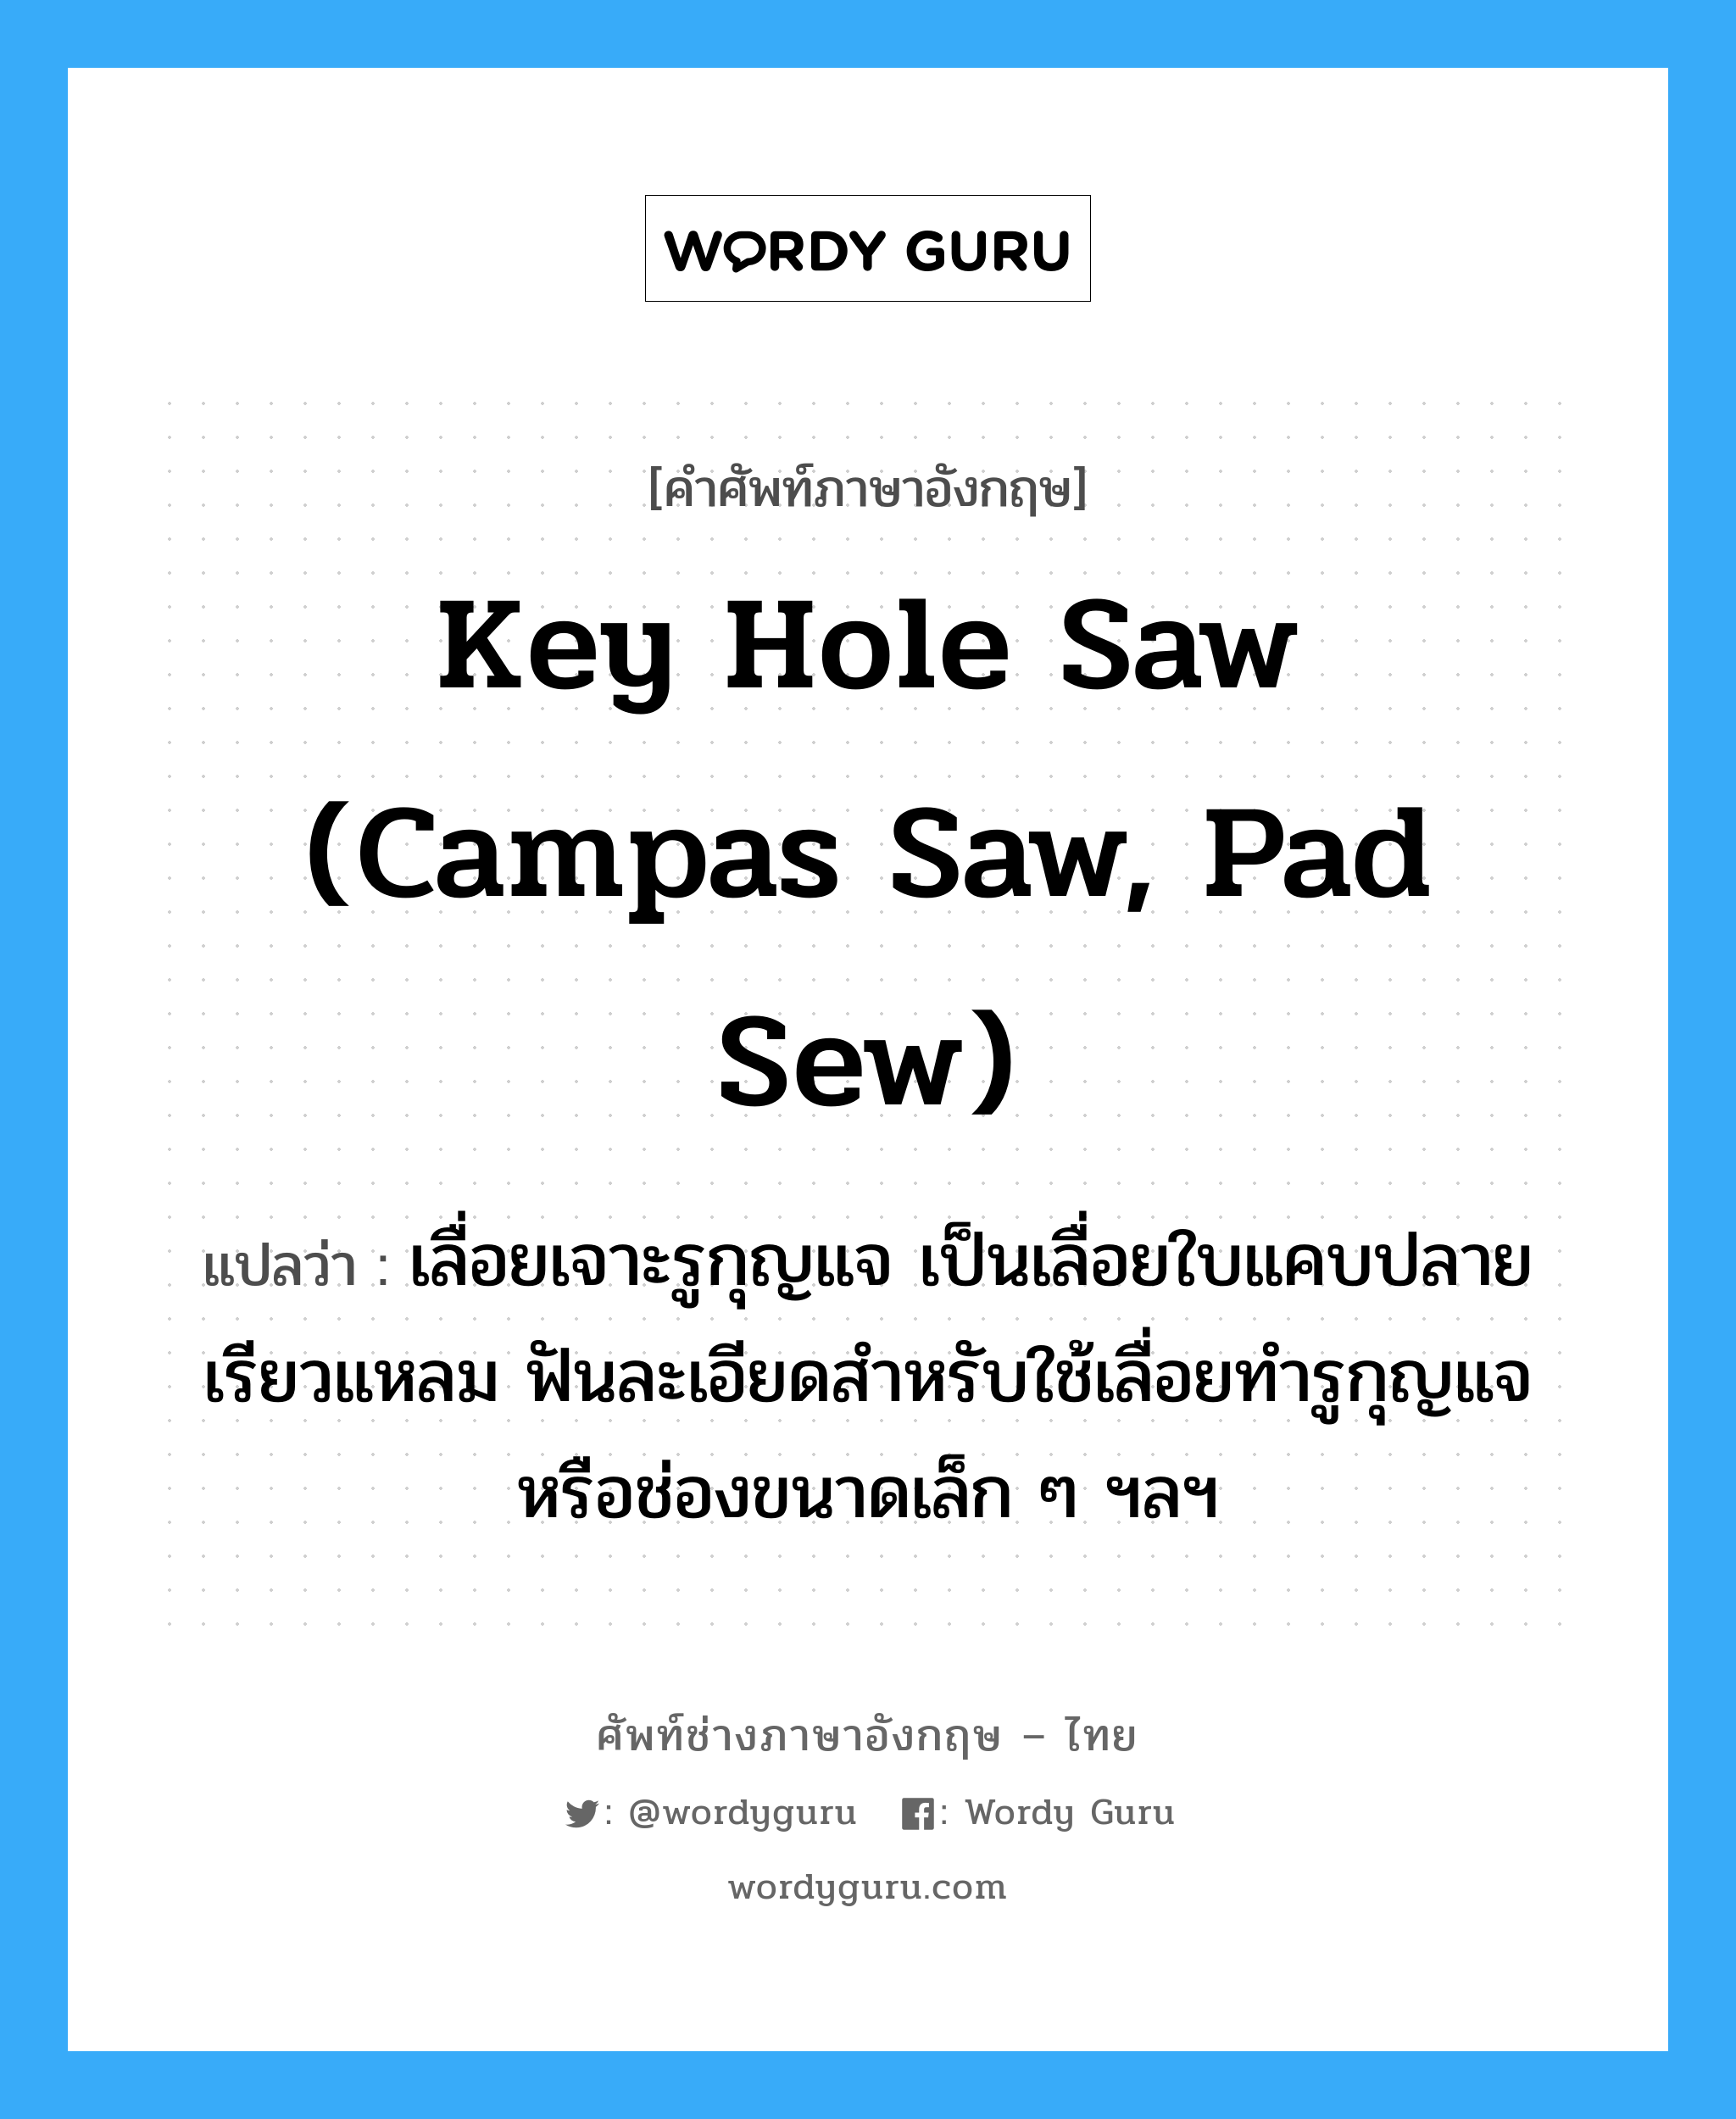 key hole saw (campas saw, pad sew) แปลว่า?, คำศัพท์ช่างภาษาอังกฤษ - ไทย key hole saw (campas saw, pad sew) คำศัพท์ภาษาอังกฤษ key hole saw (campas saw, pad sew) แปลว่า เลื่อยเจาะรูกุญแจ เป็นเลื่อยใบแคบปลายเรียวแหลม ฟันละเอียดสำหรับใช้เลื่อยทำรูกุญแจ หรือช่องขนาดเล็ก ๆ ฯลฯ